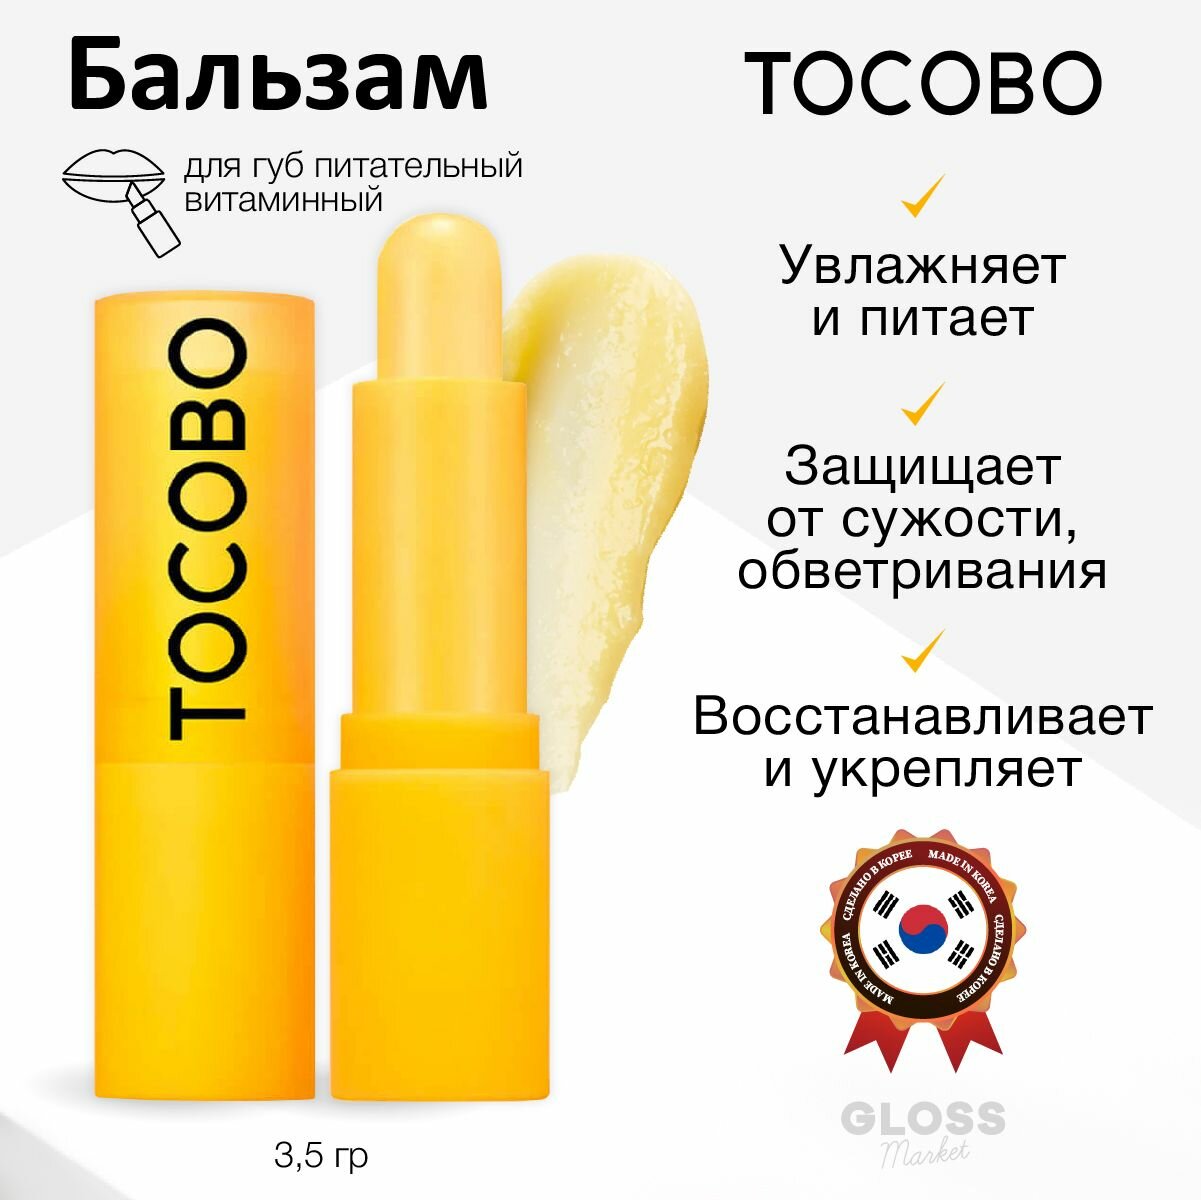 Tocobo Питательный витаминный бальзам для губ Vitamin Nourishing Lip Balm 3,5 г